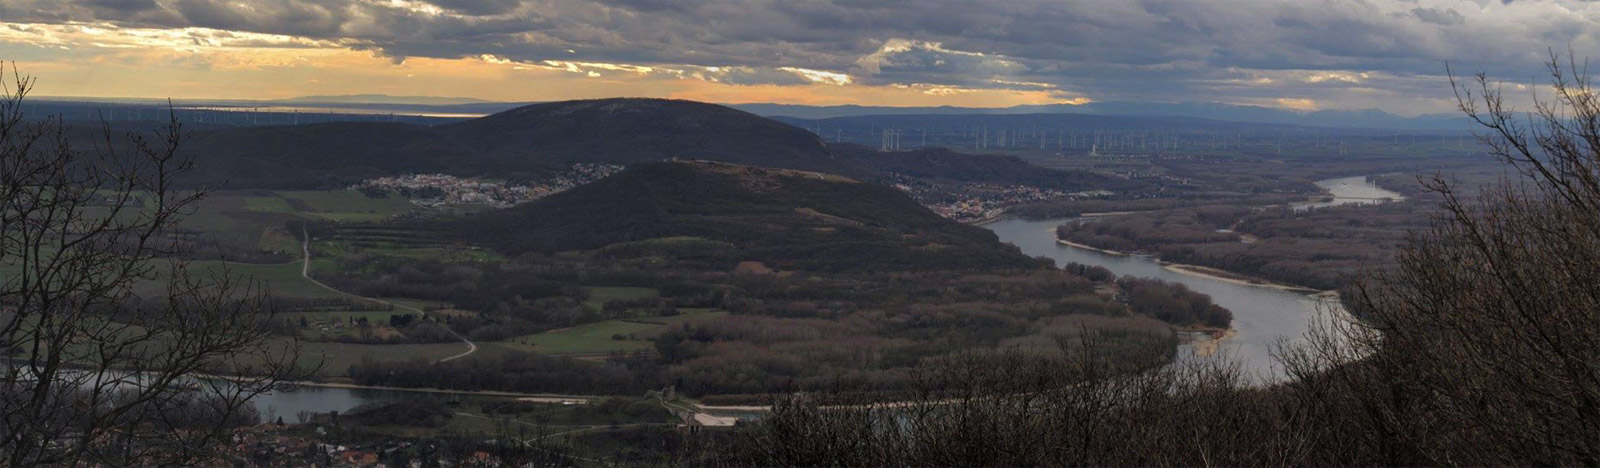 The Danube River in Devinska Brana Gate. Panorama view